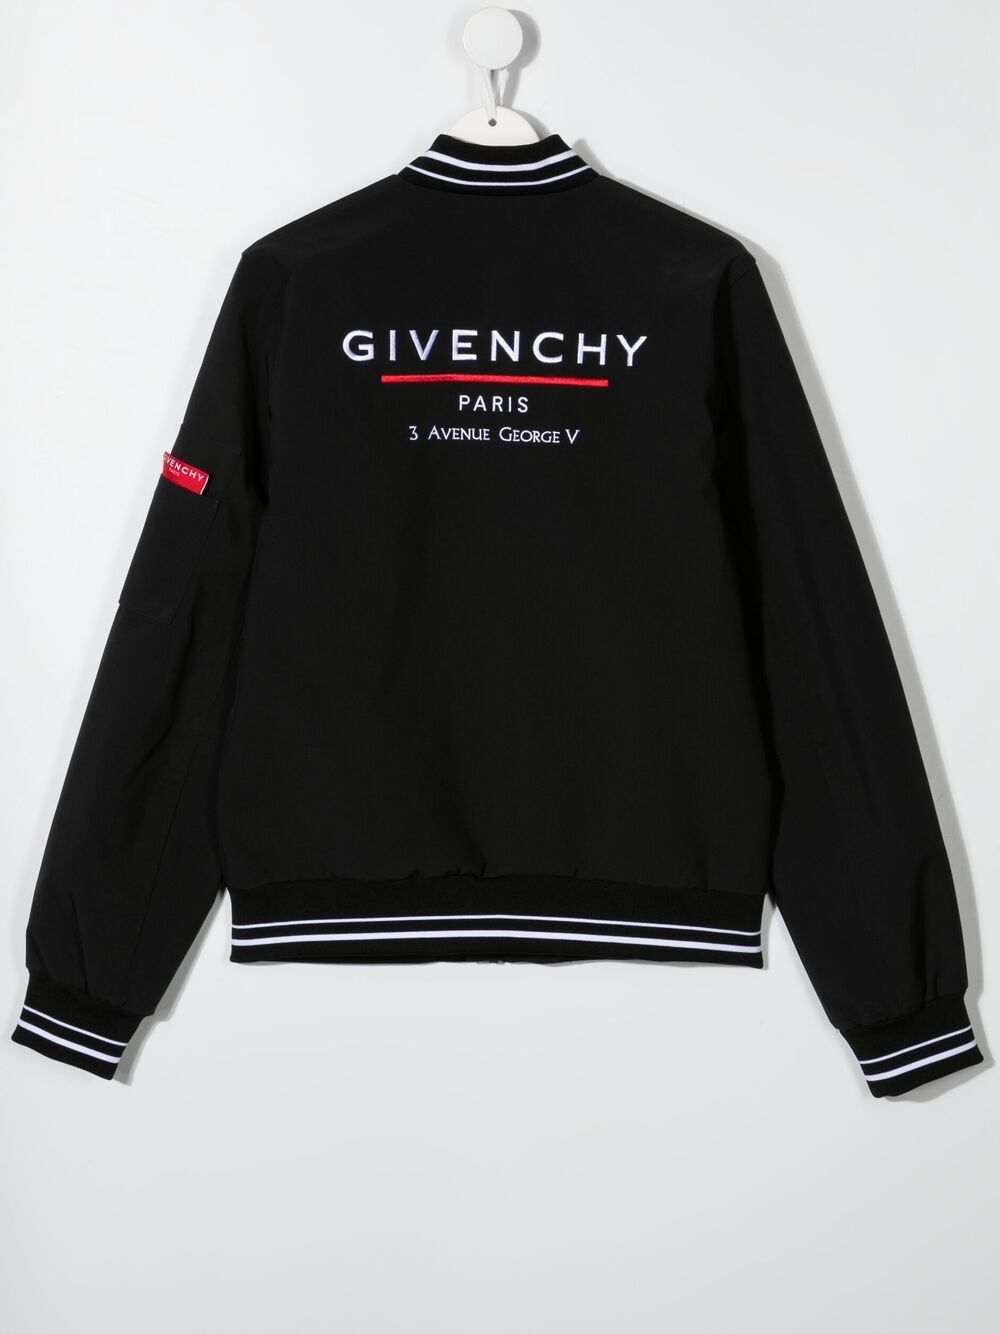 фото Givenchy kids куртка с контрастными полосками